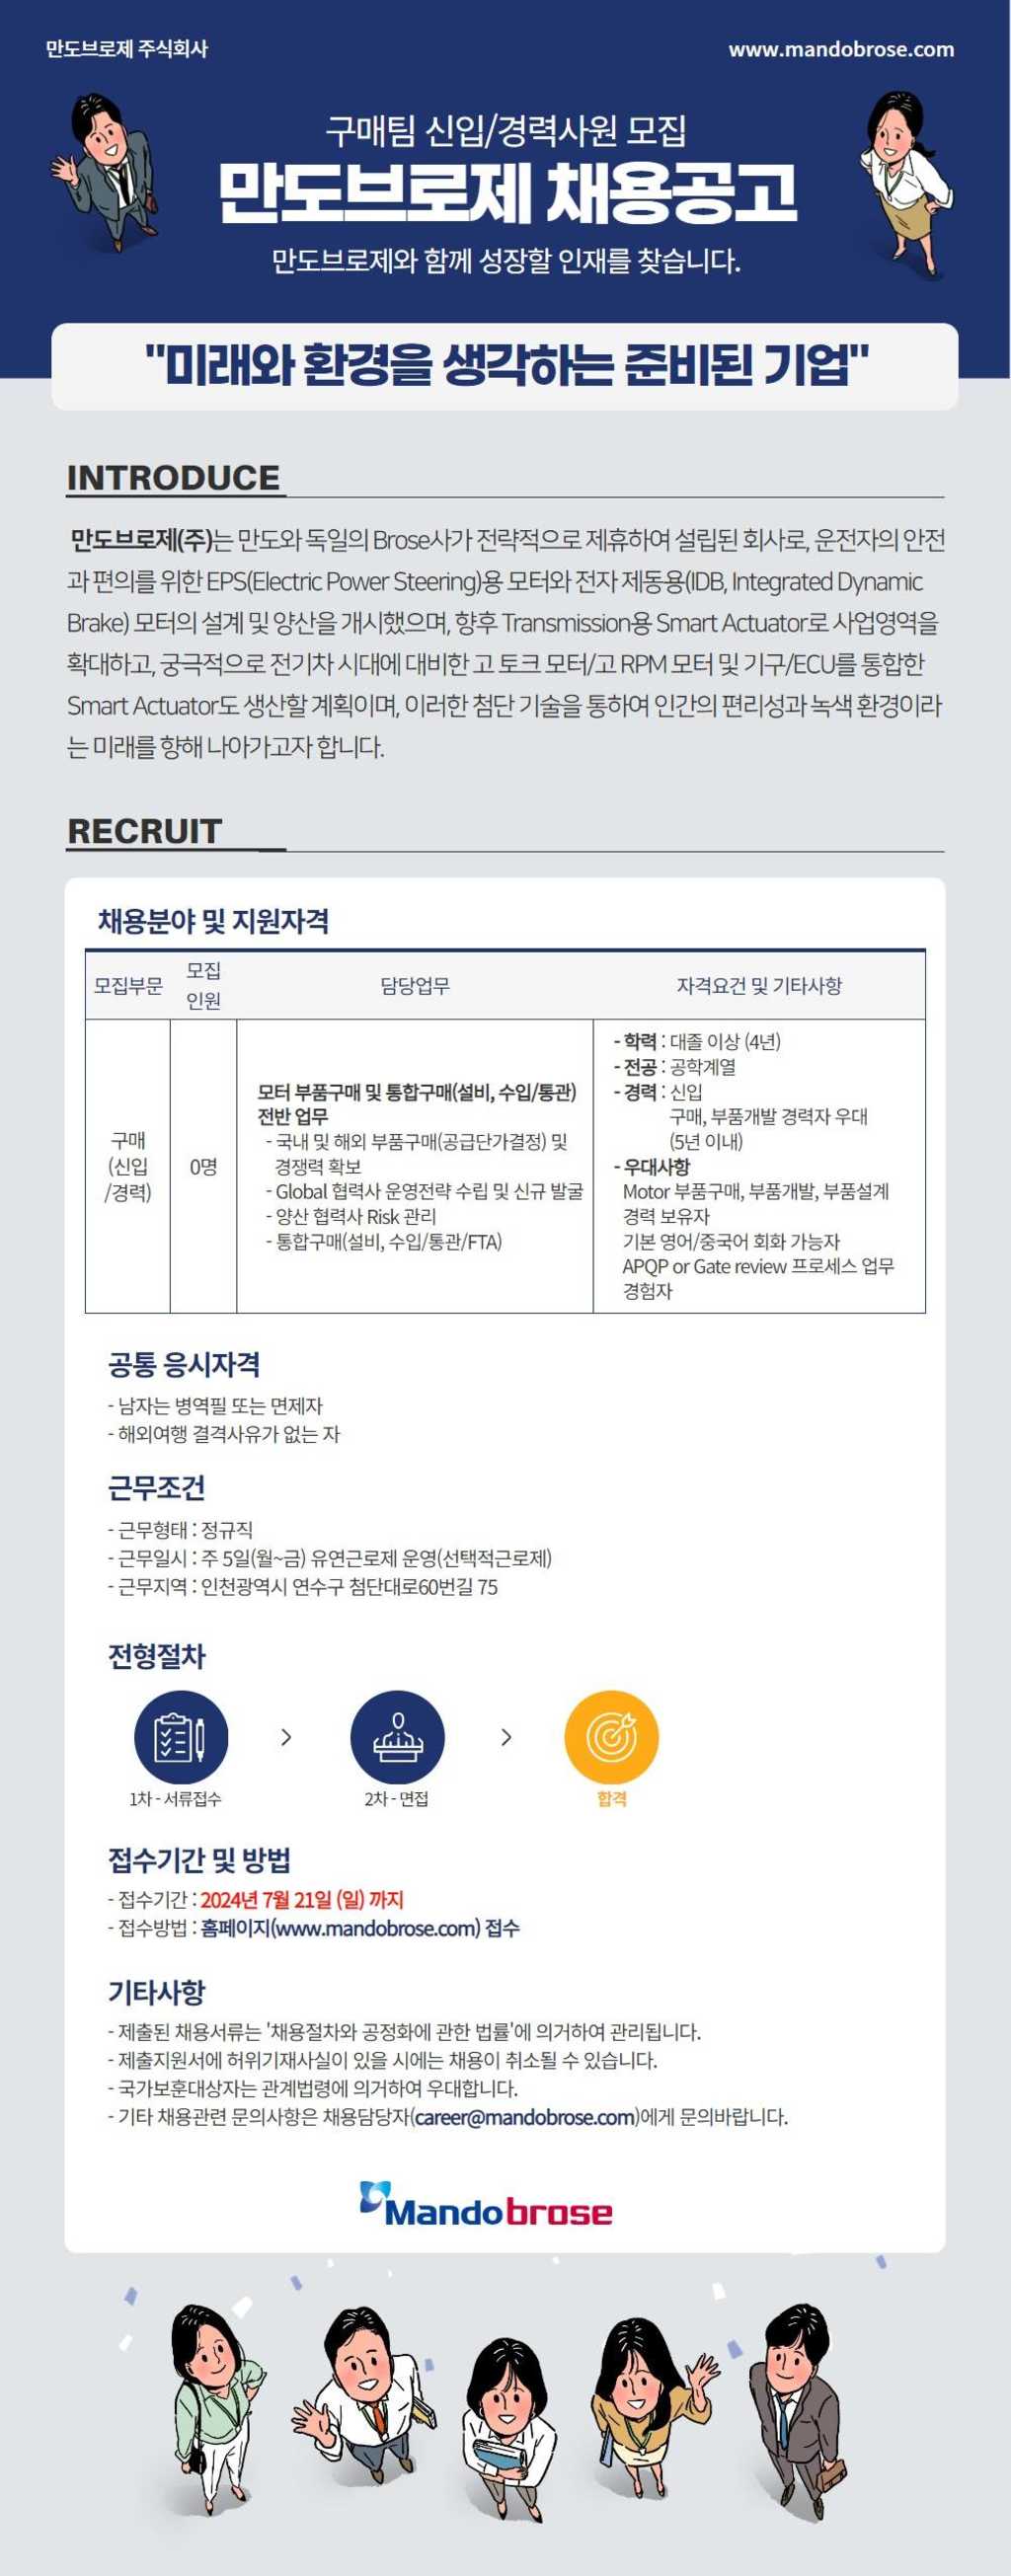 [만도브로제] 구매팀 신입/경력 사원 채용